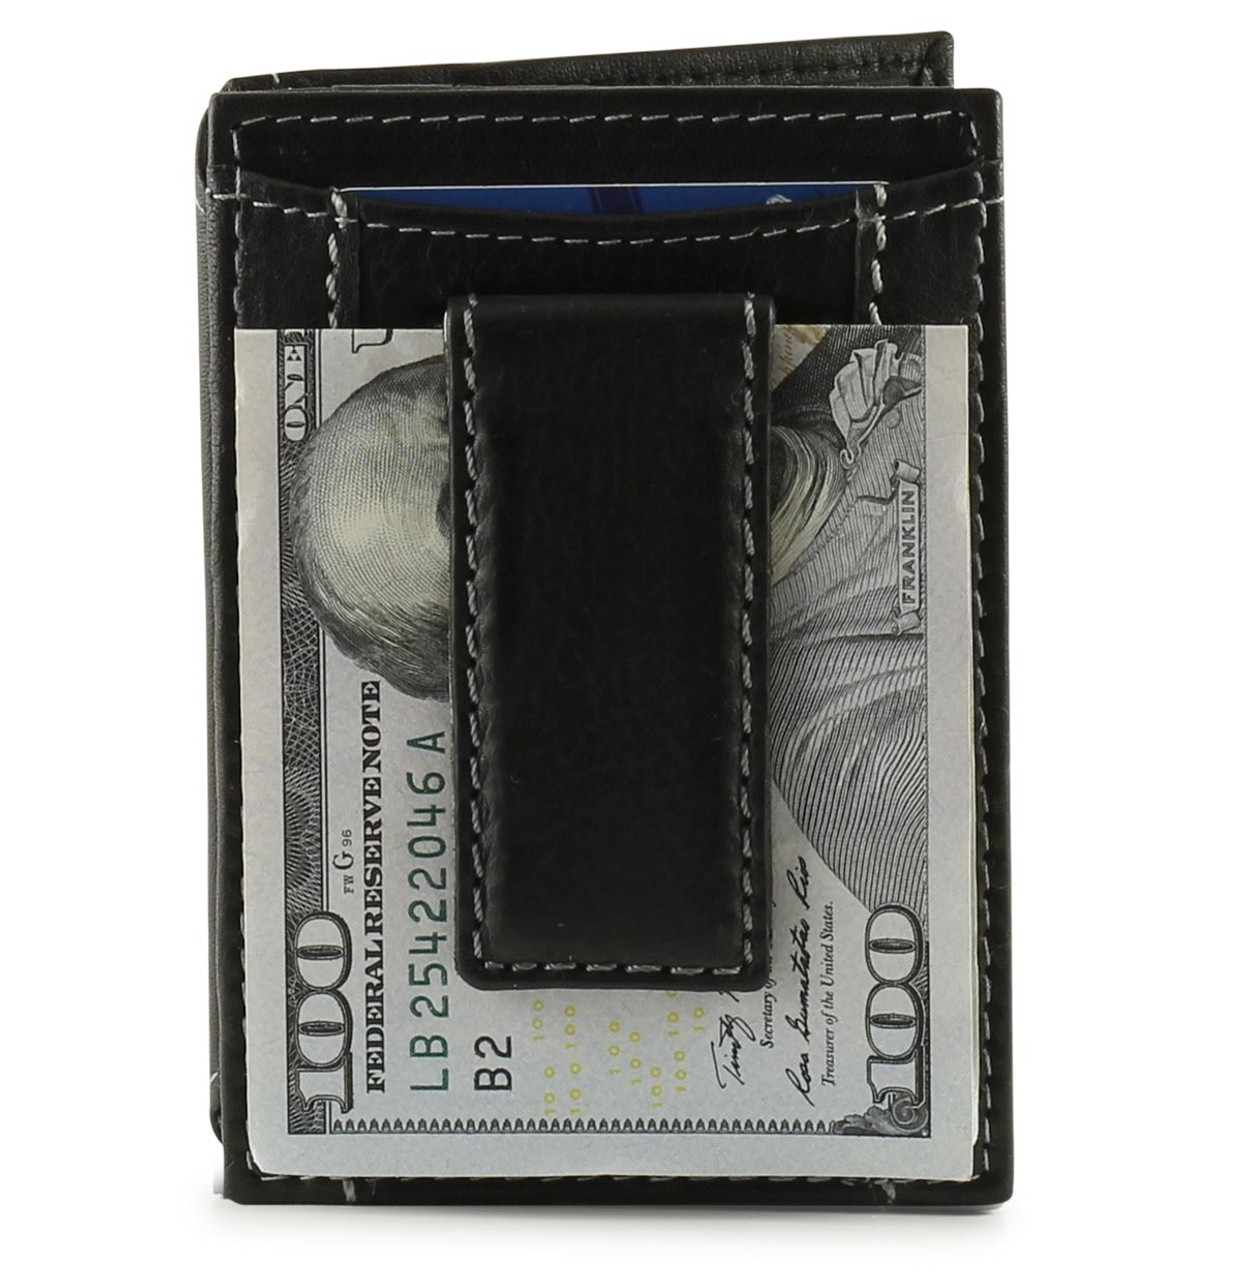 WalletGear Ultra Slim Money Clip Wallet